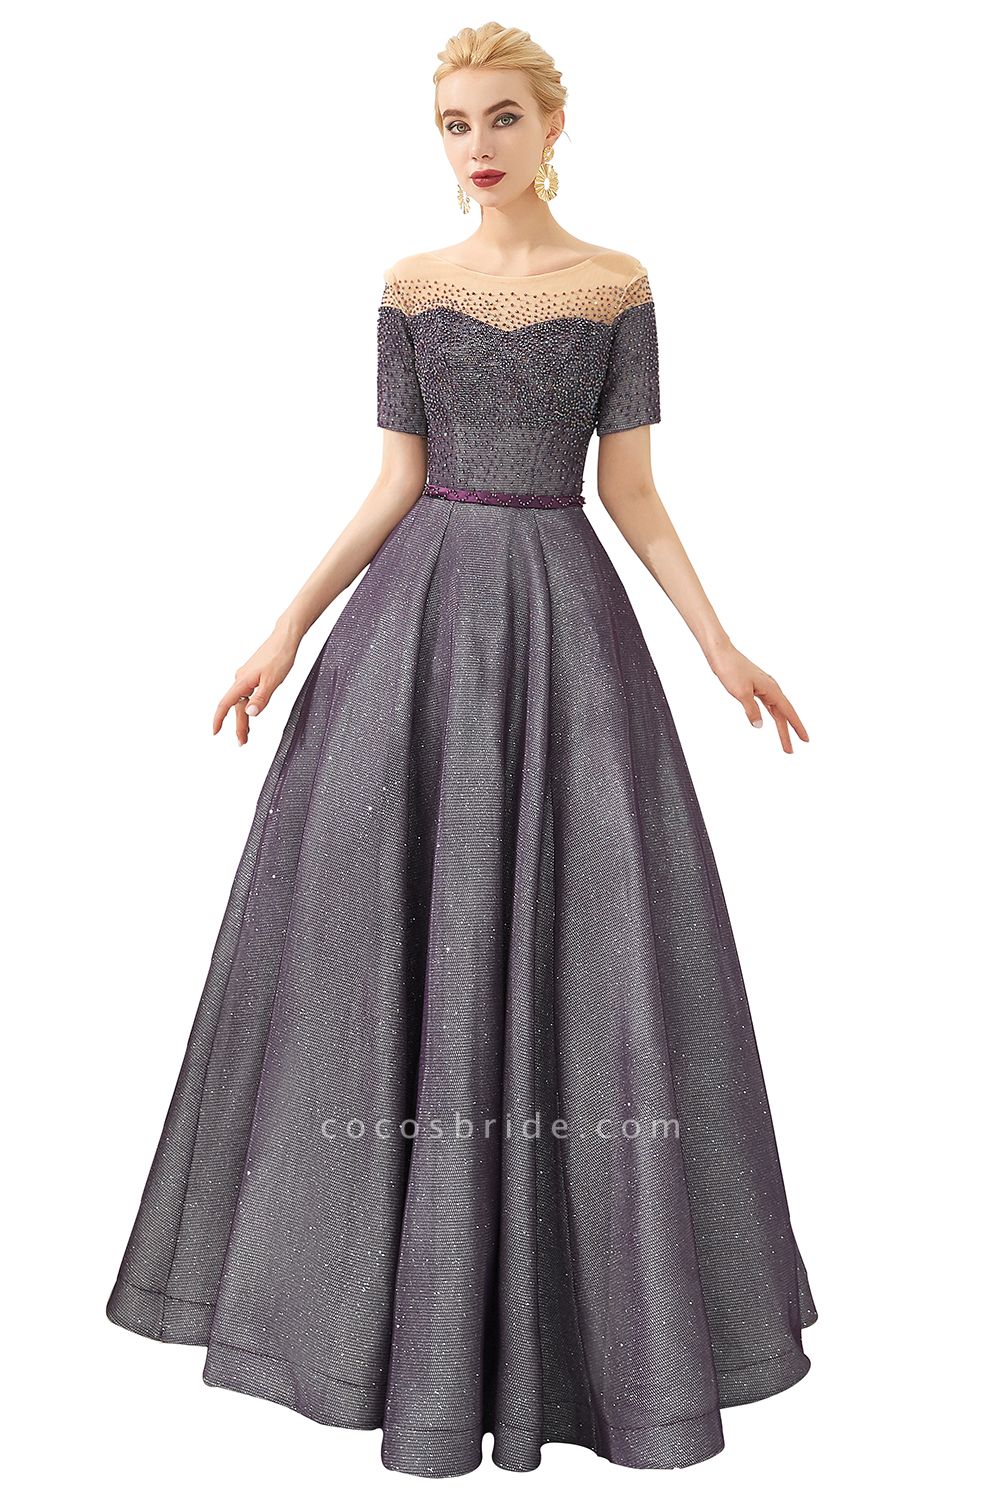 Fascinating Jewel Bright silk Princess Prom Dress